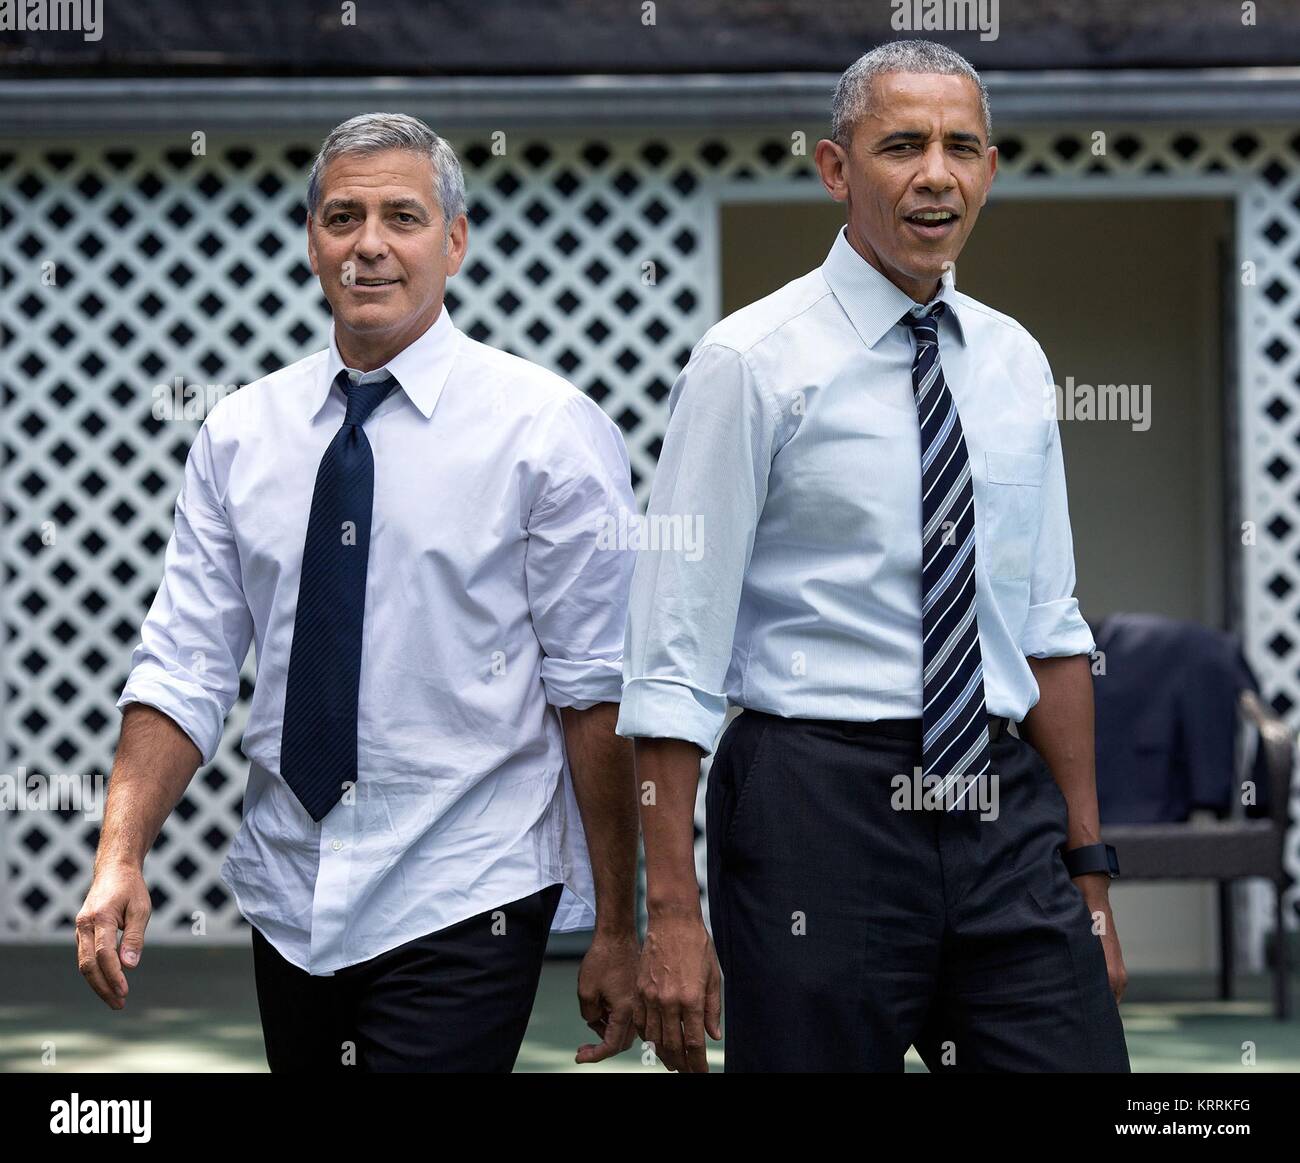 L'acteur George Clooney (à gauche) et le président américain Barack Obama joue au basket-ball à la Maison Blanche le 12 septembre 2016 à Washington, DC. Banque D'Images